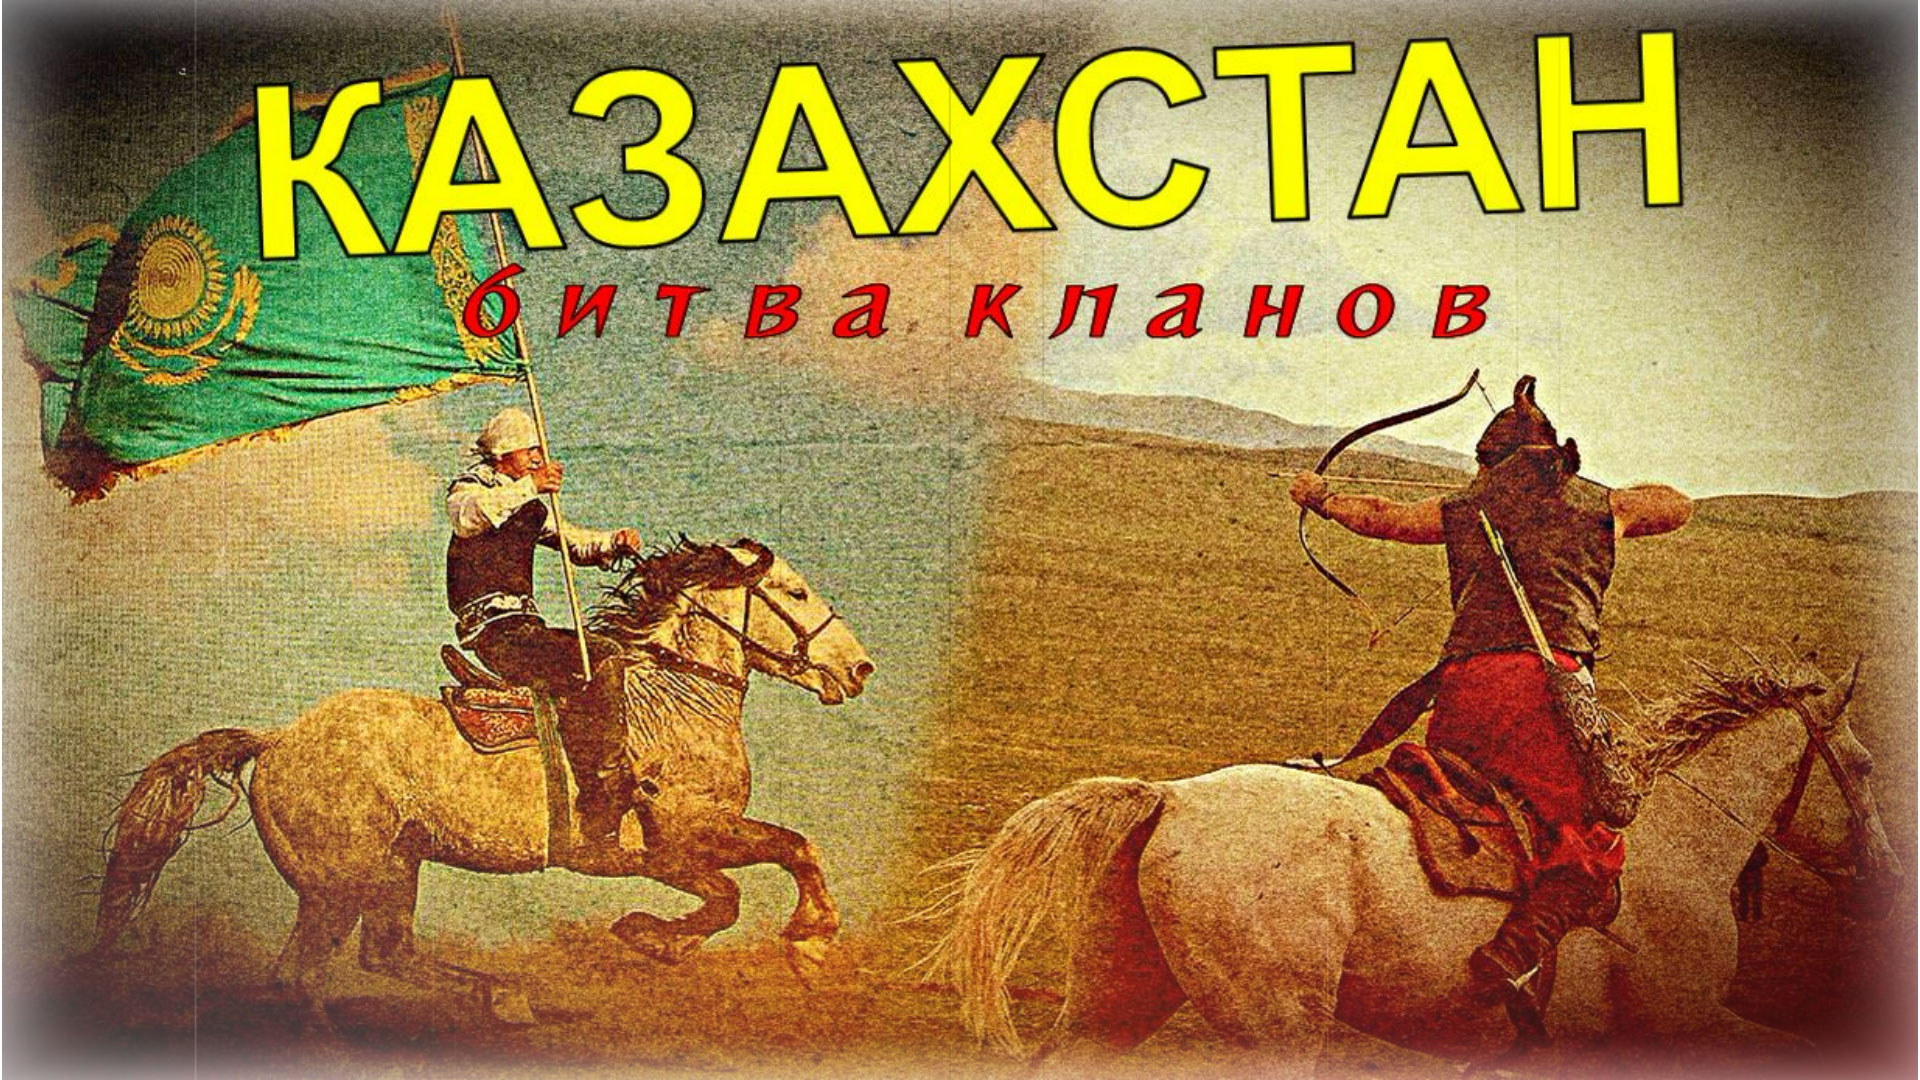 "Казахстан держится на российских штыках!" ⚠️ Битва кланов или Украинский вариант - что будет скоро